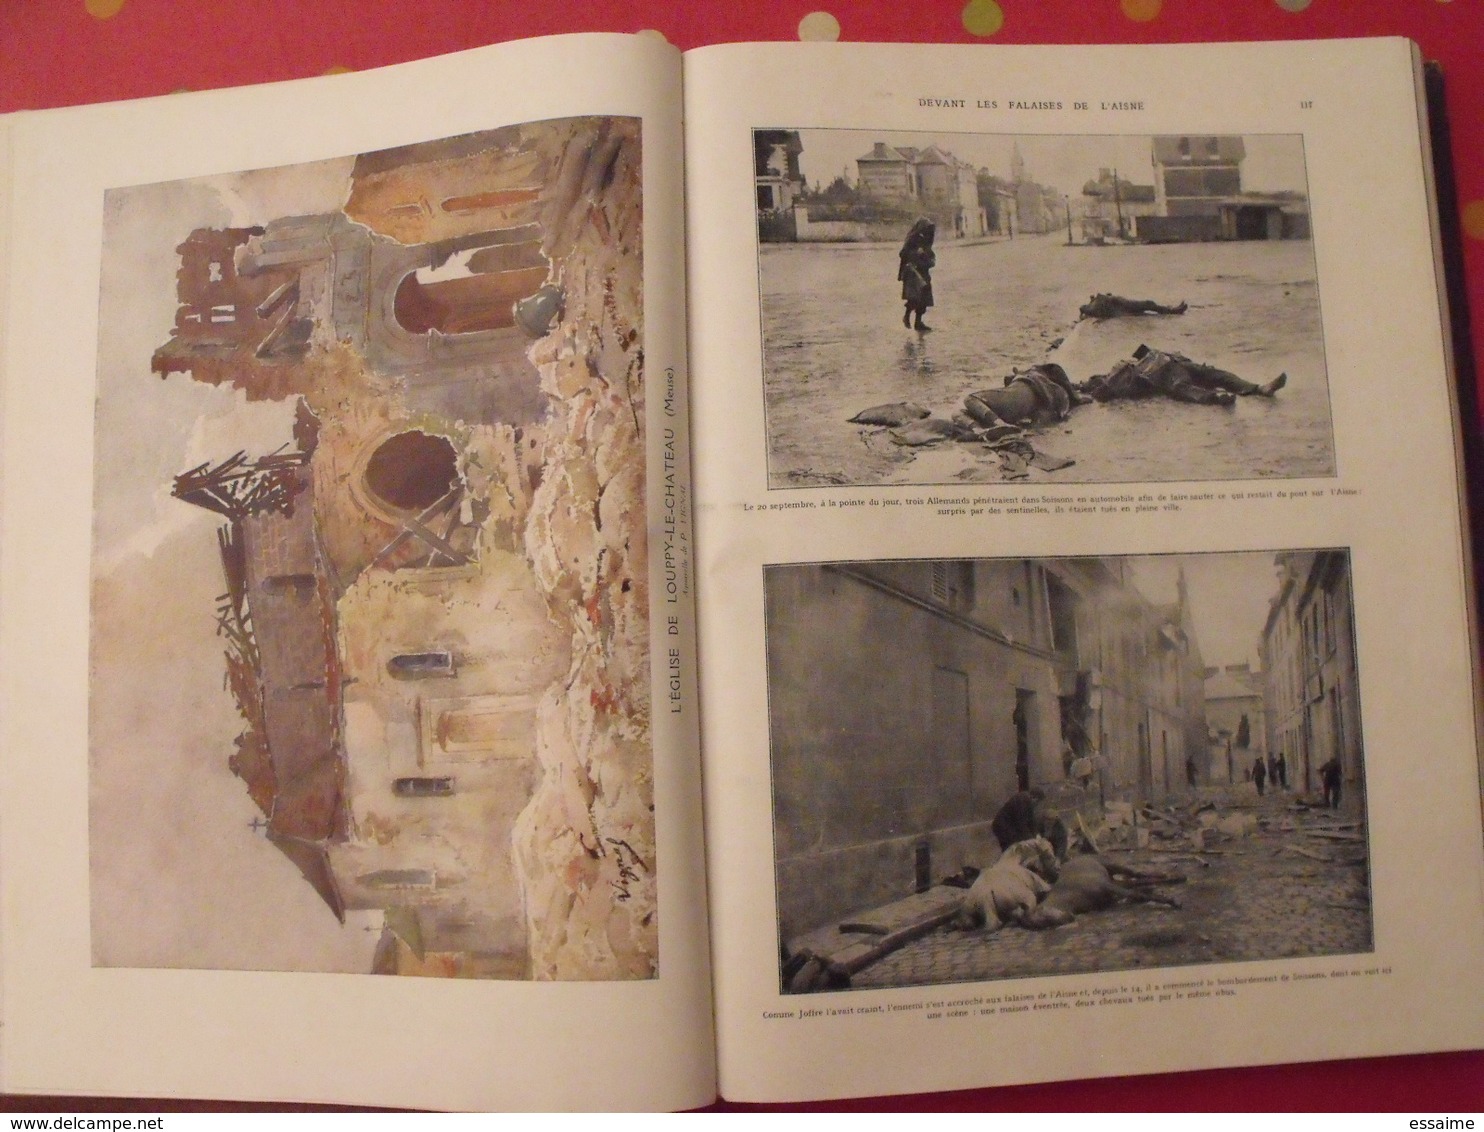 l'album de la guerre 1914 1919 en 2 tomes. très documenté (photos, dessins).  l'illustration 925. encart couleurs